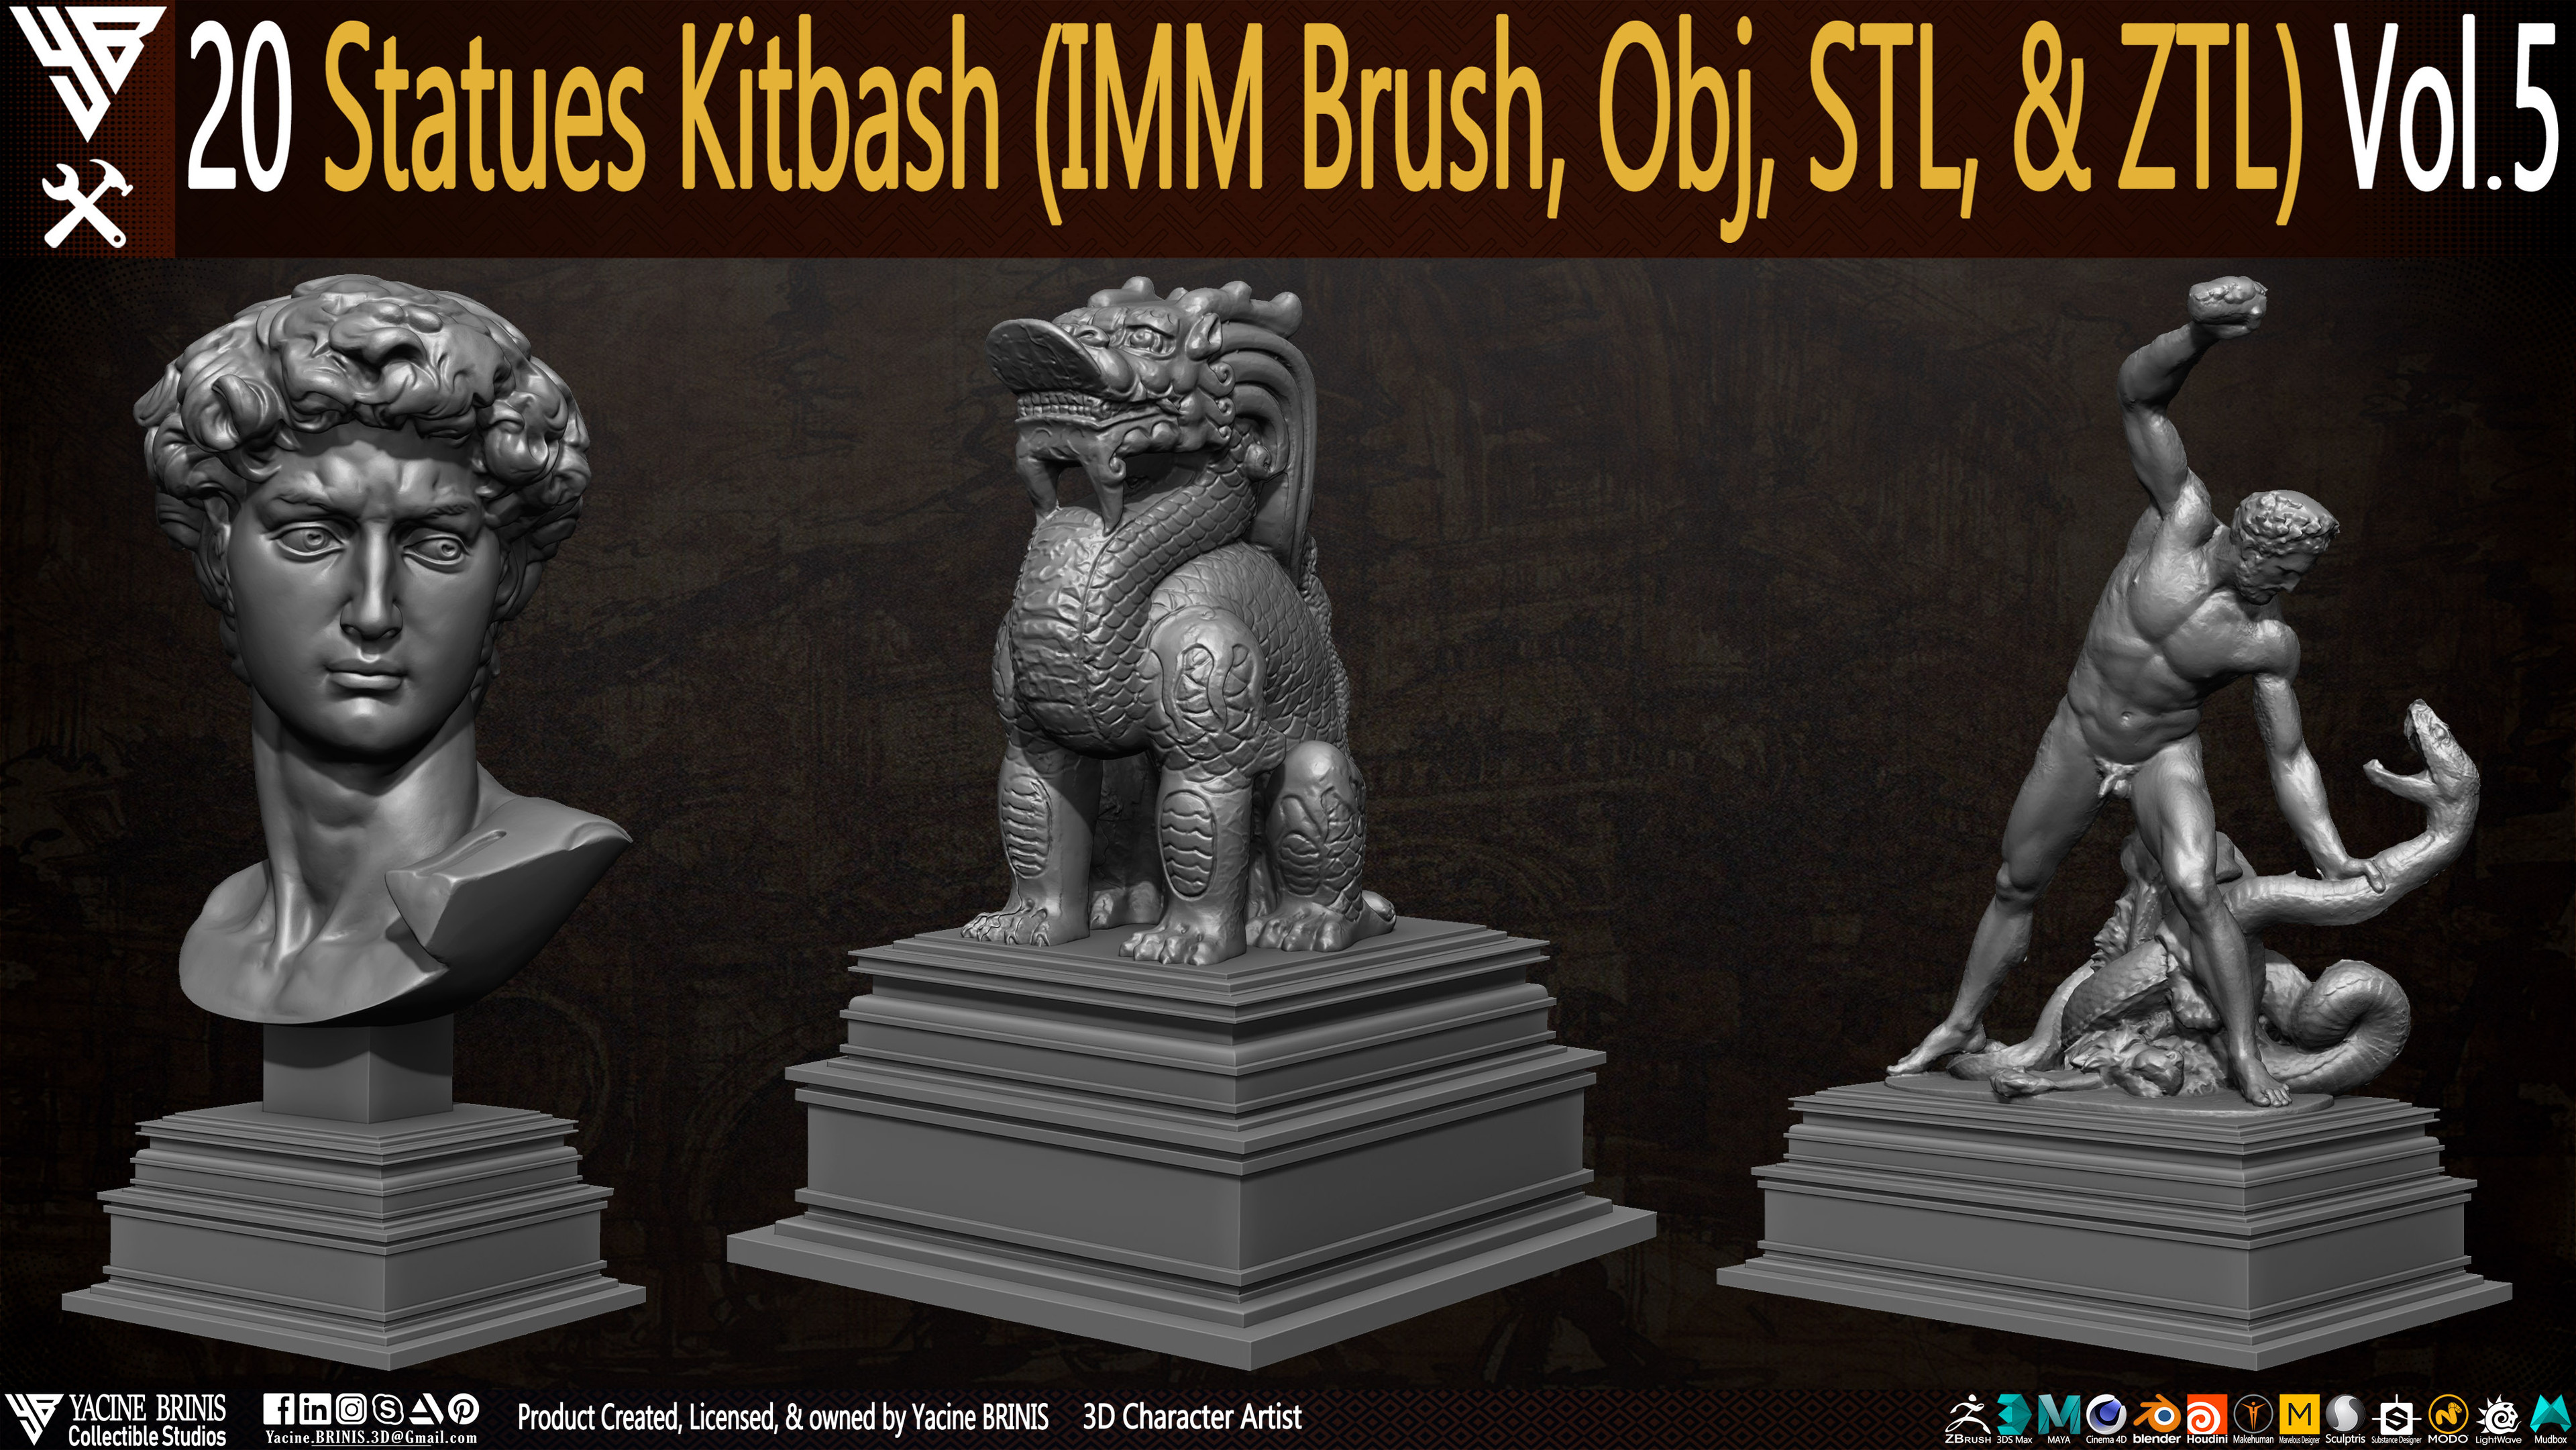 Statues Kitbash by yacine brinis Set 28